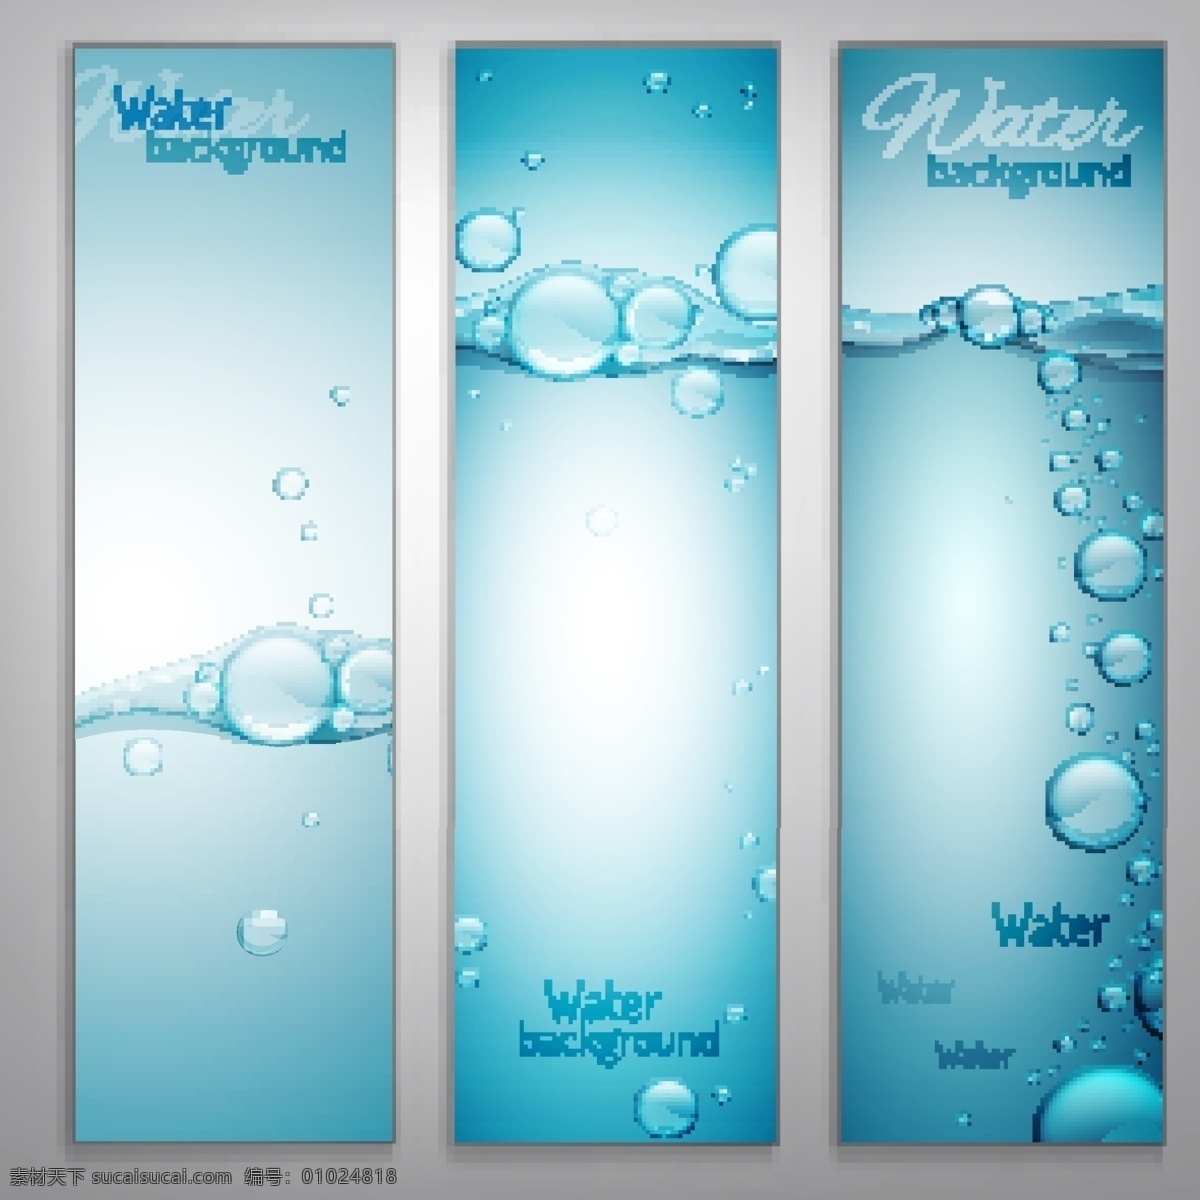 水标志 水资源 自来水 水标签 天然纯净水 水滴 logo 水纹logo 清水 优质水源标签 优质水标签 纯天然矿泉水 纯净水 水泡 节能环保主题